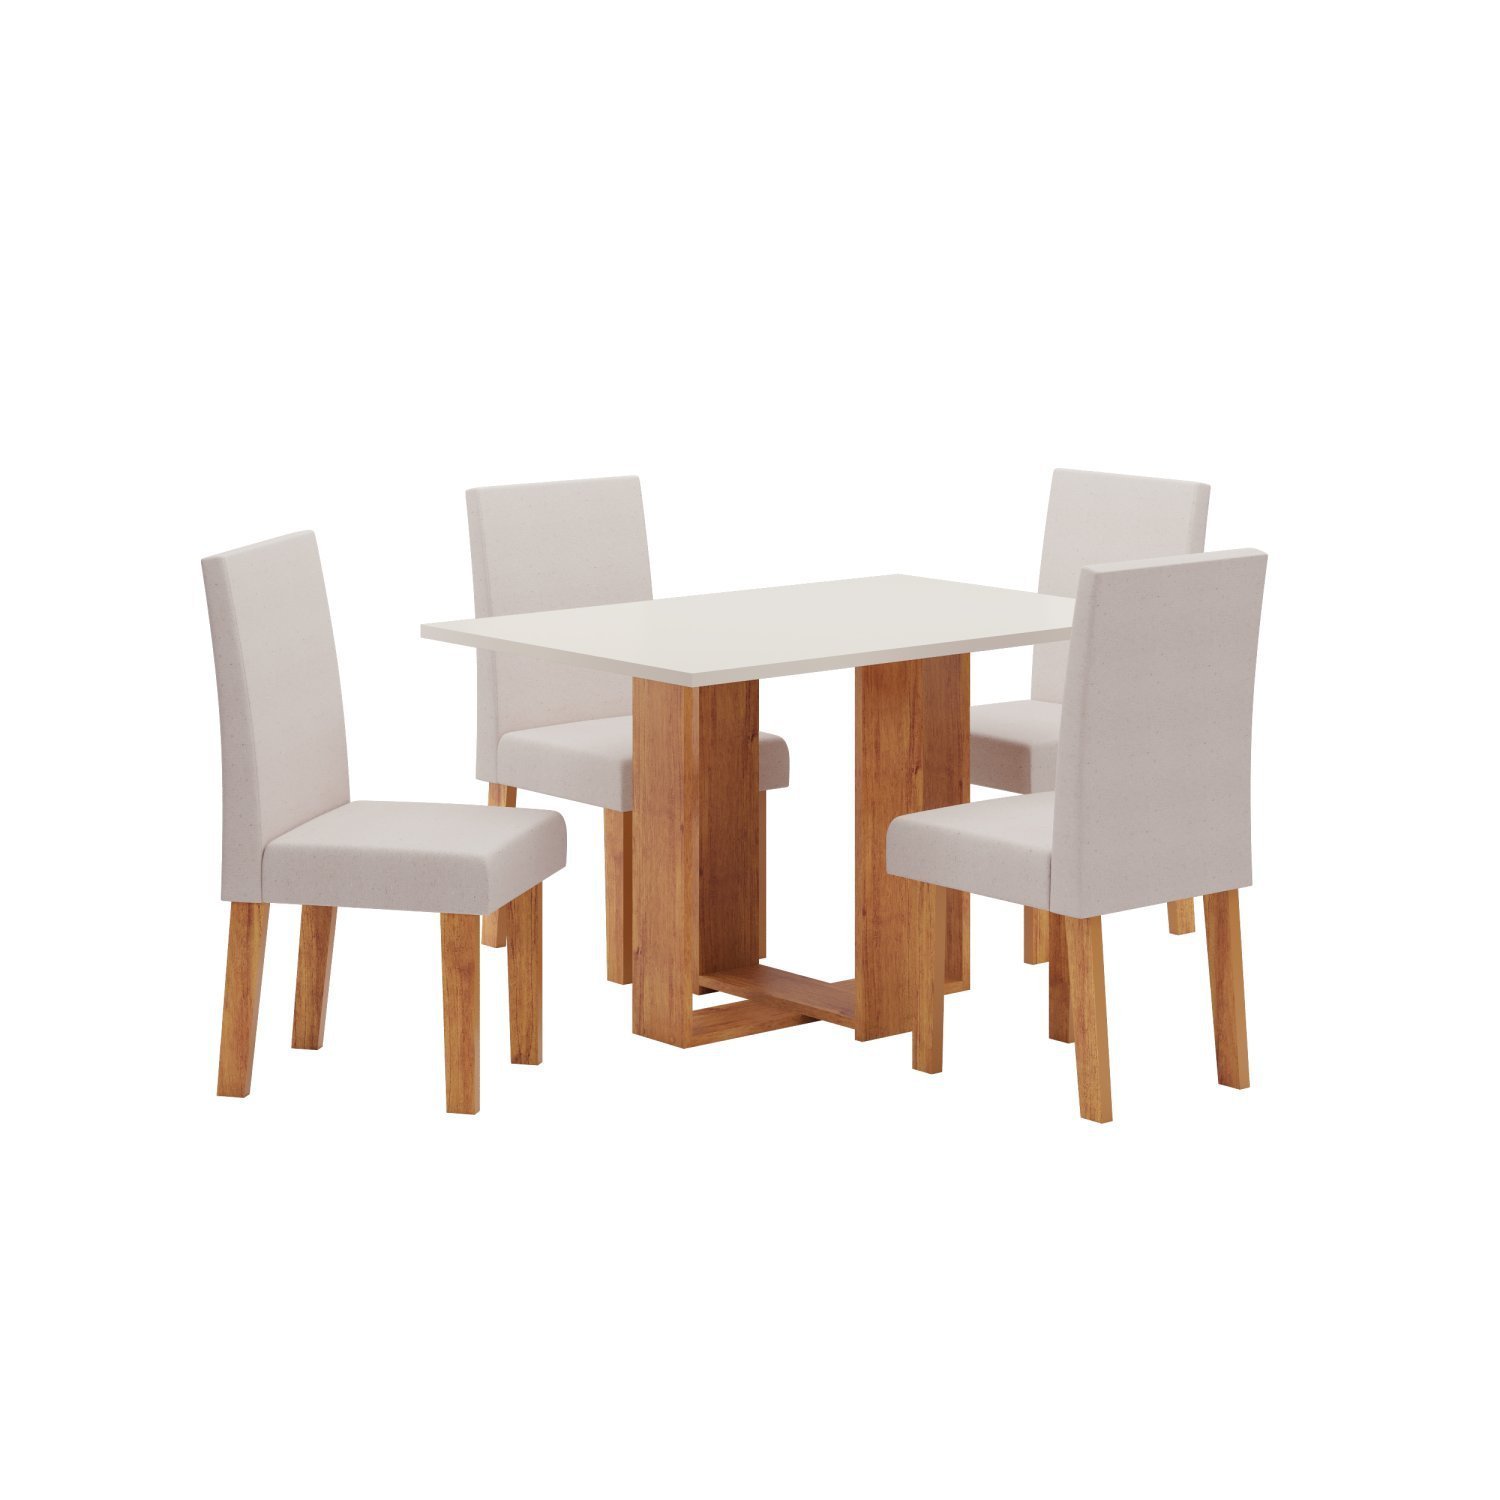 Conjunto Sala de Jantar Mesa Criare com 4 Cadeiras Venus Viero